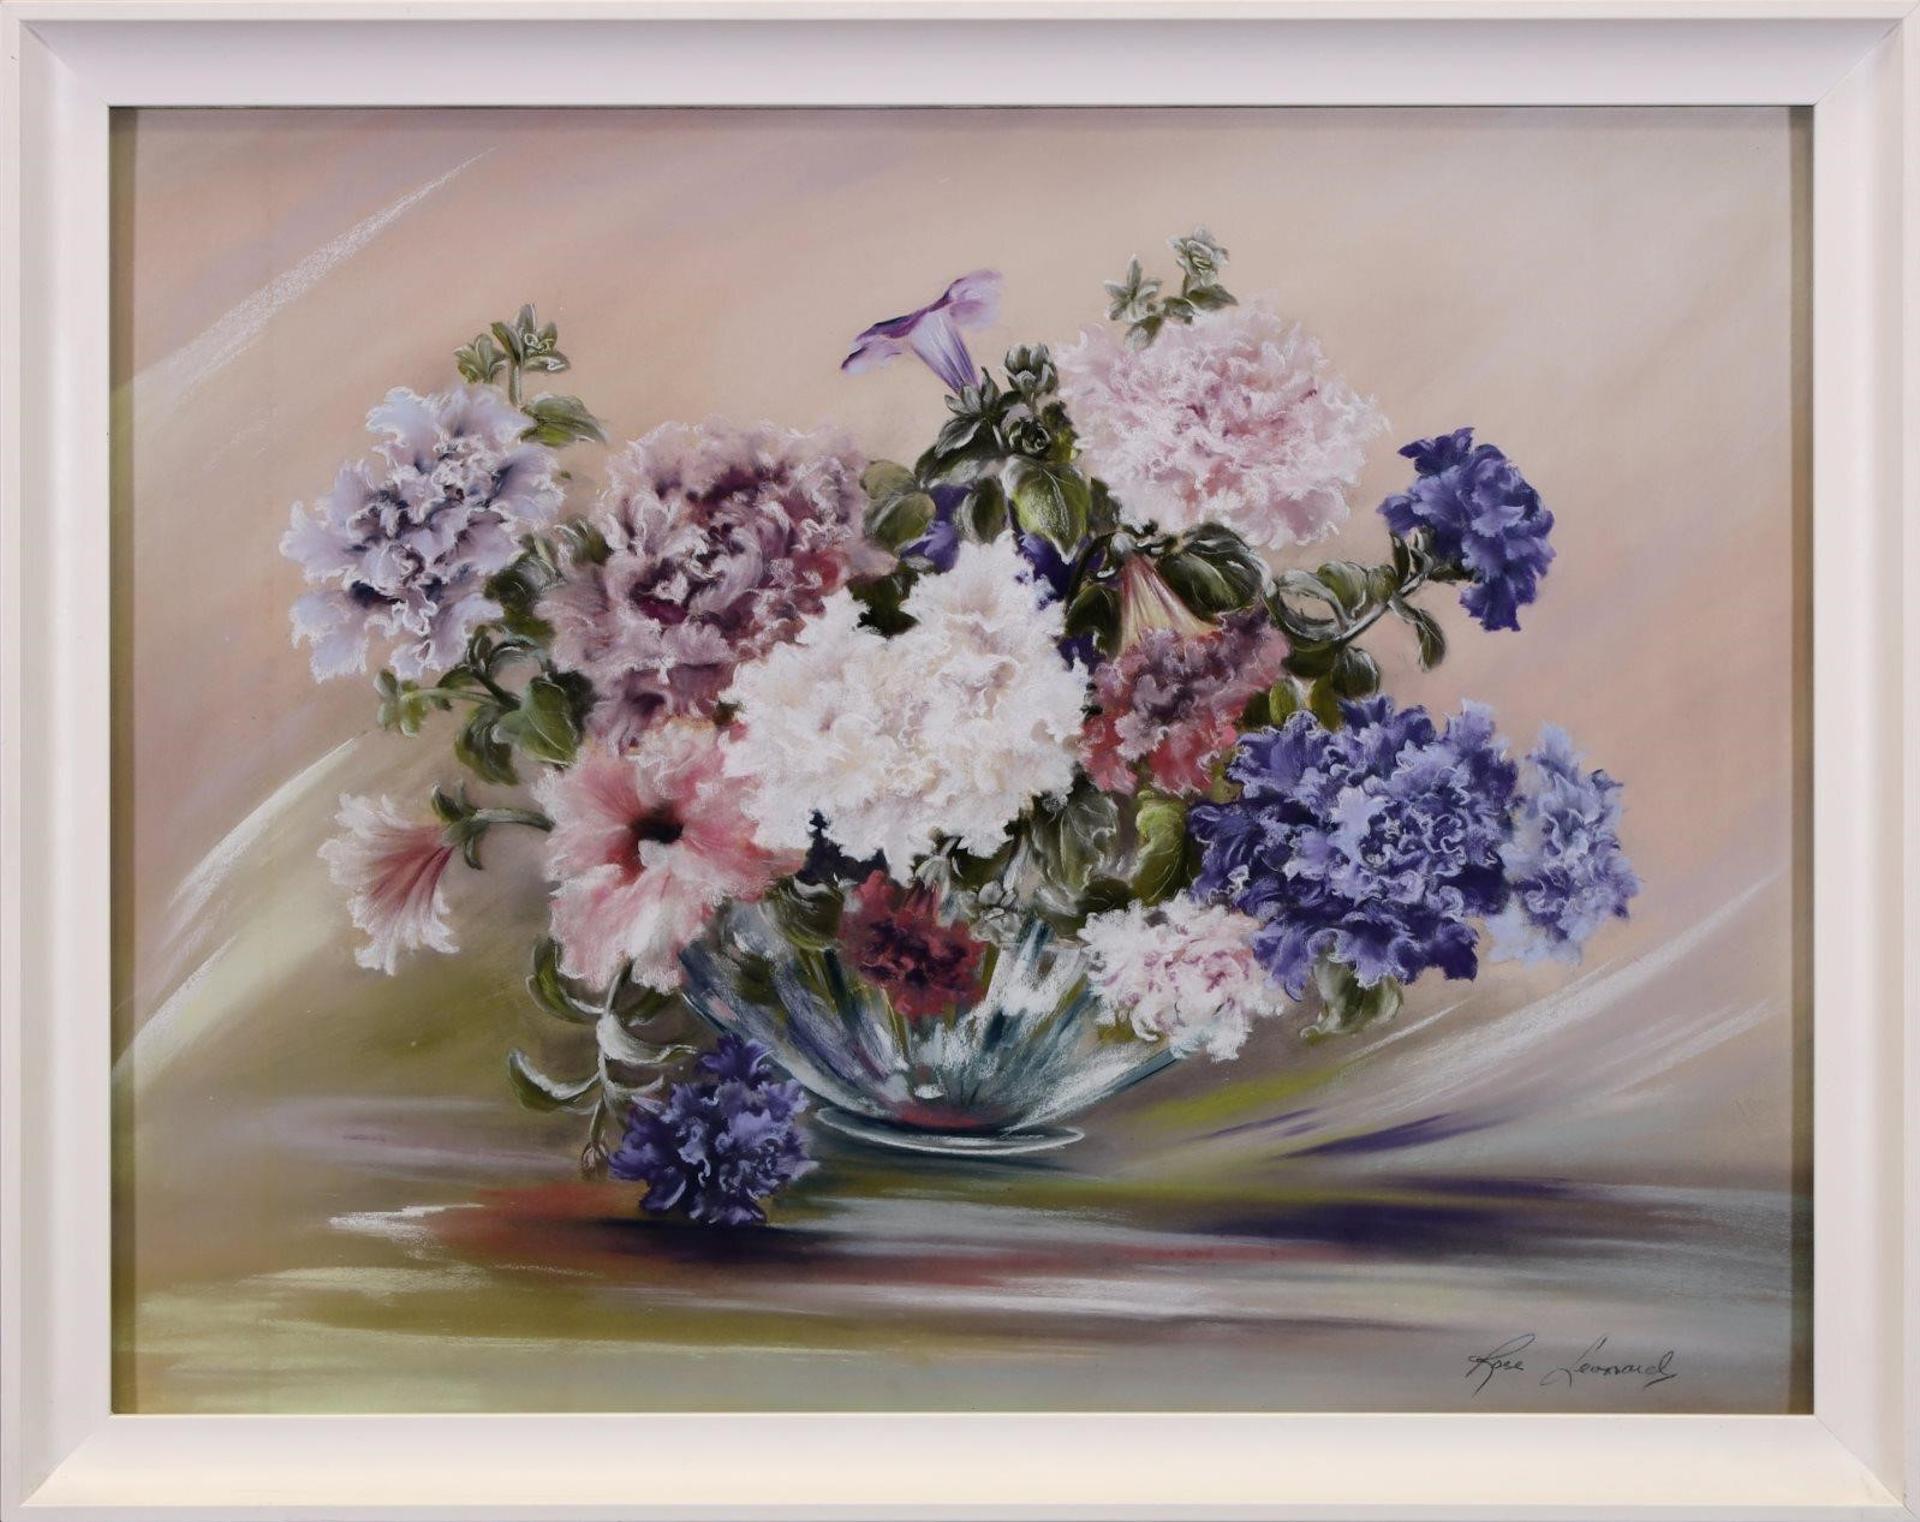 Rose Leonard (1916-2005) - Untitled, Floral Still Life